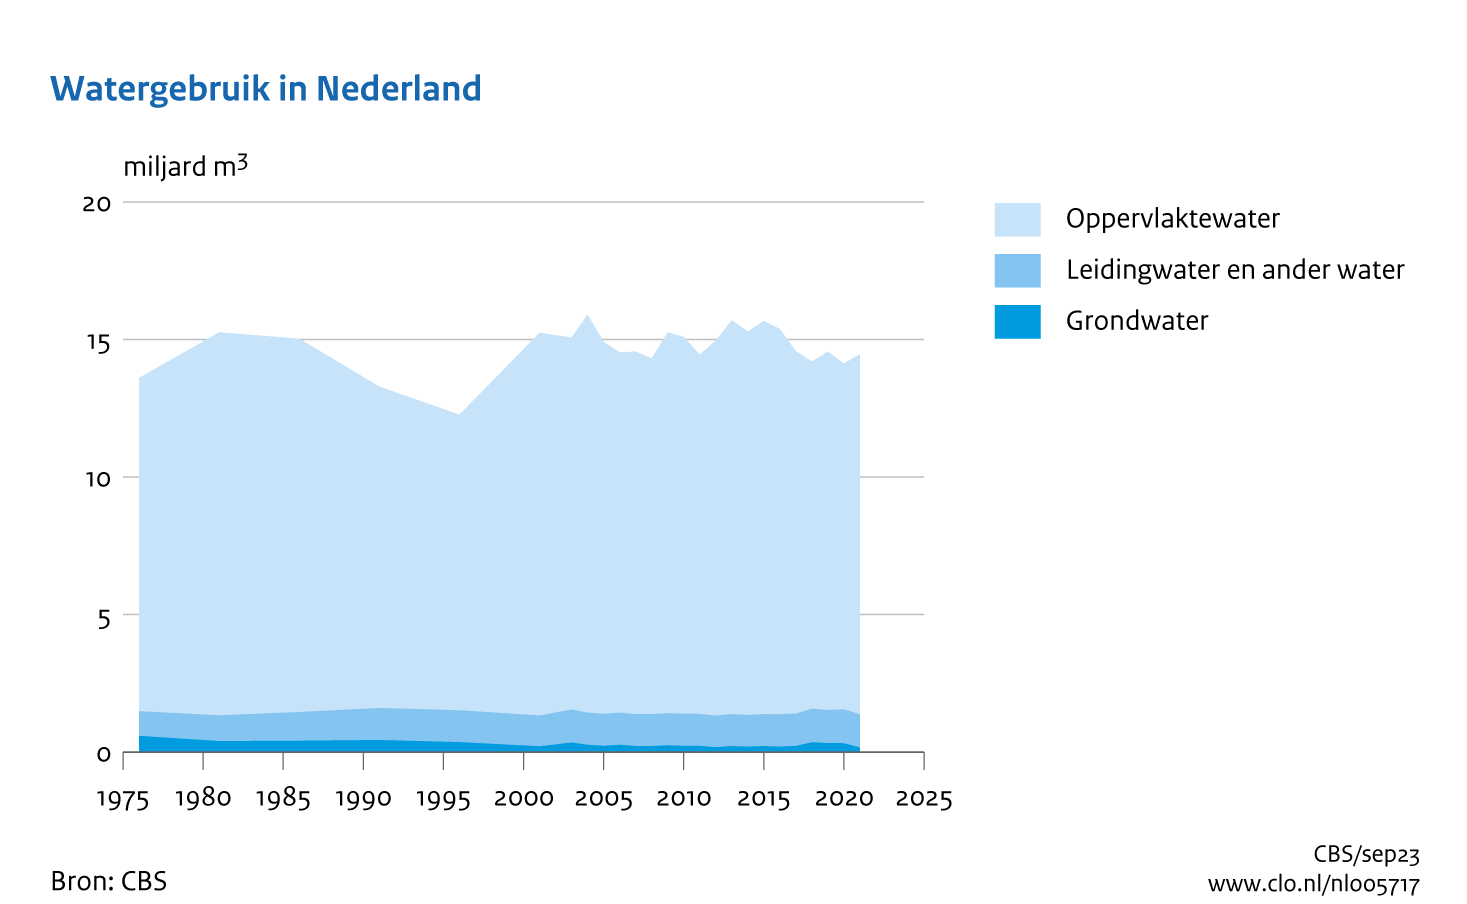 Figuur Watergebruik in Nederland 1976-2021. In de rest van de tekst wordt deze figuur uitgebreider uitgelegd.